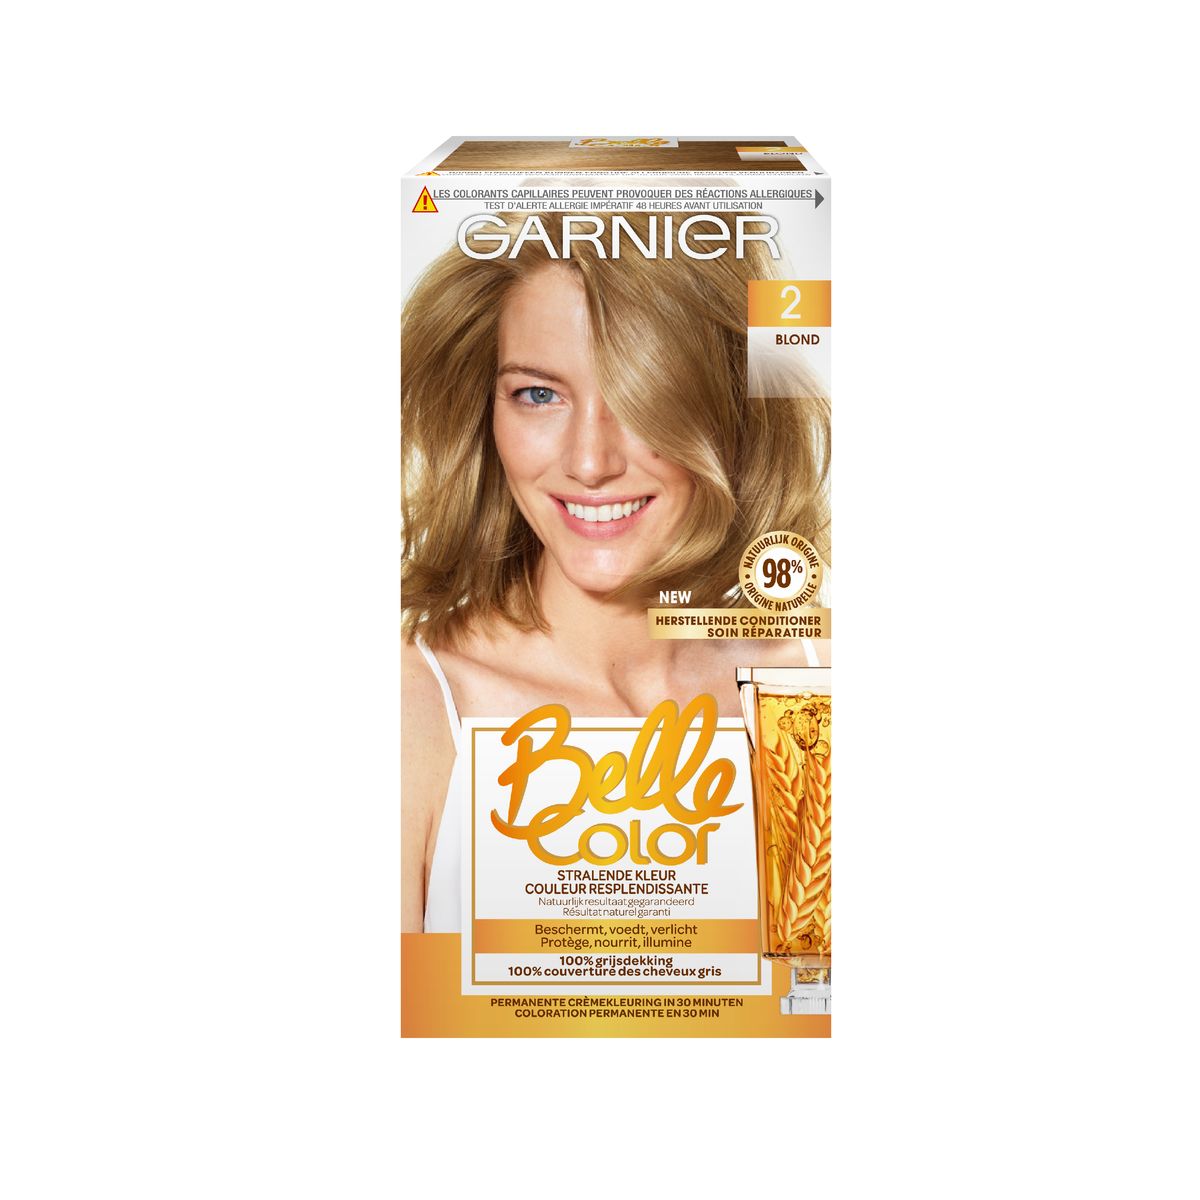 Garnier Belle Color 2 Blond Coloration Permanente